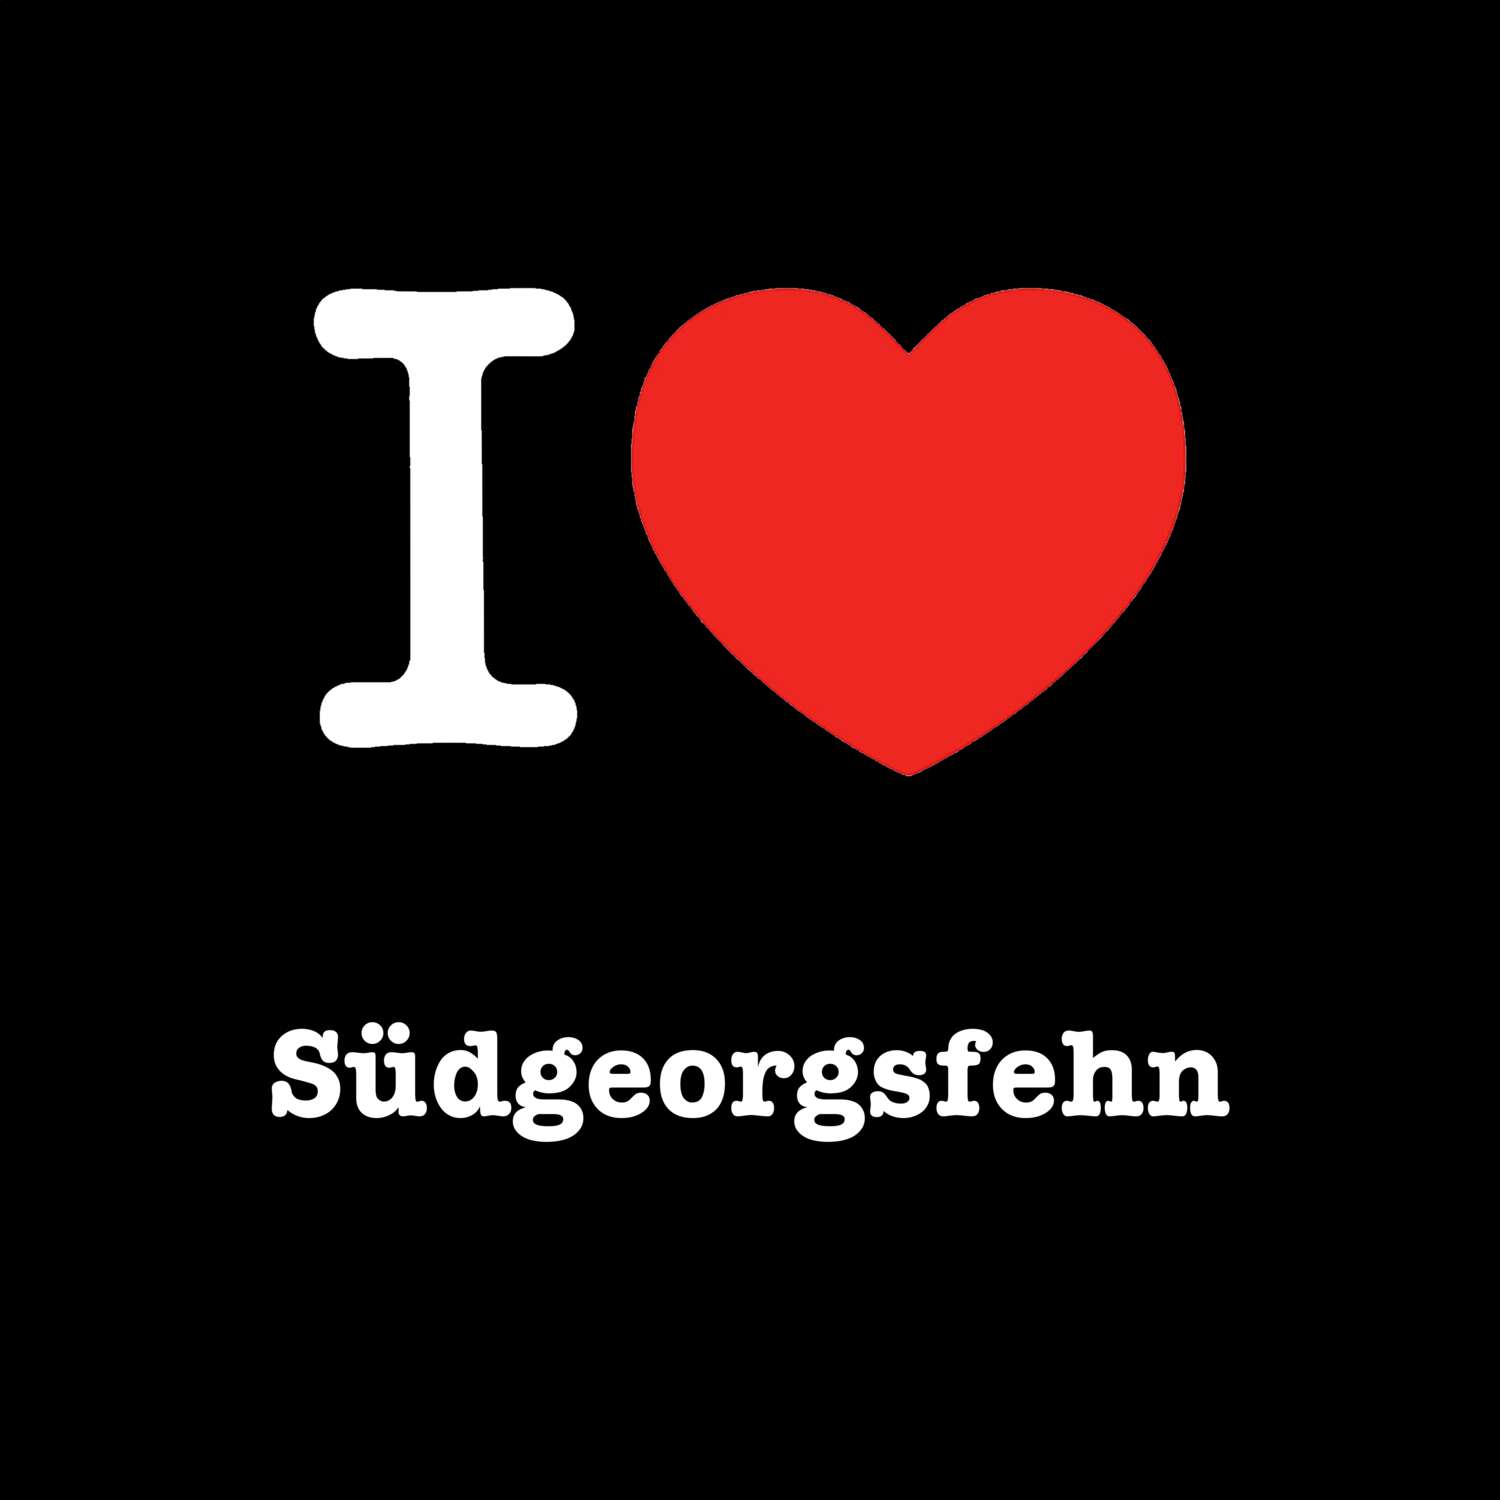 Südgeorgsfehn T-Shirt »I love«